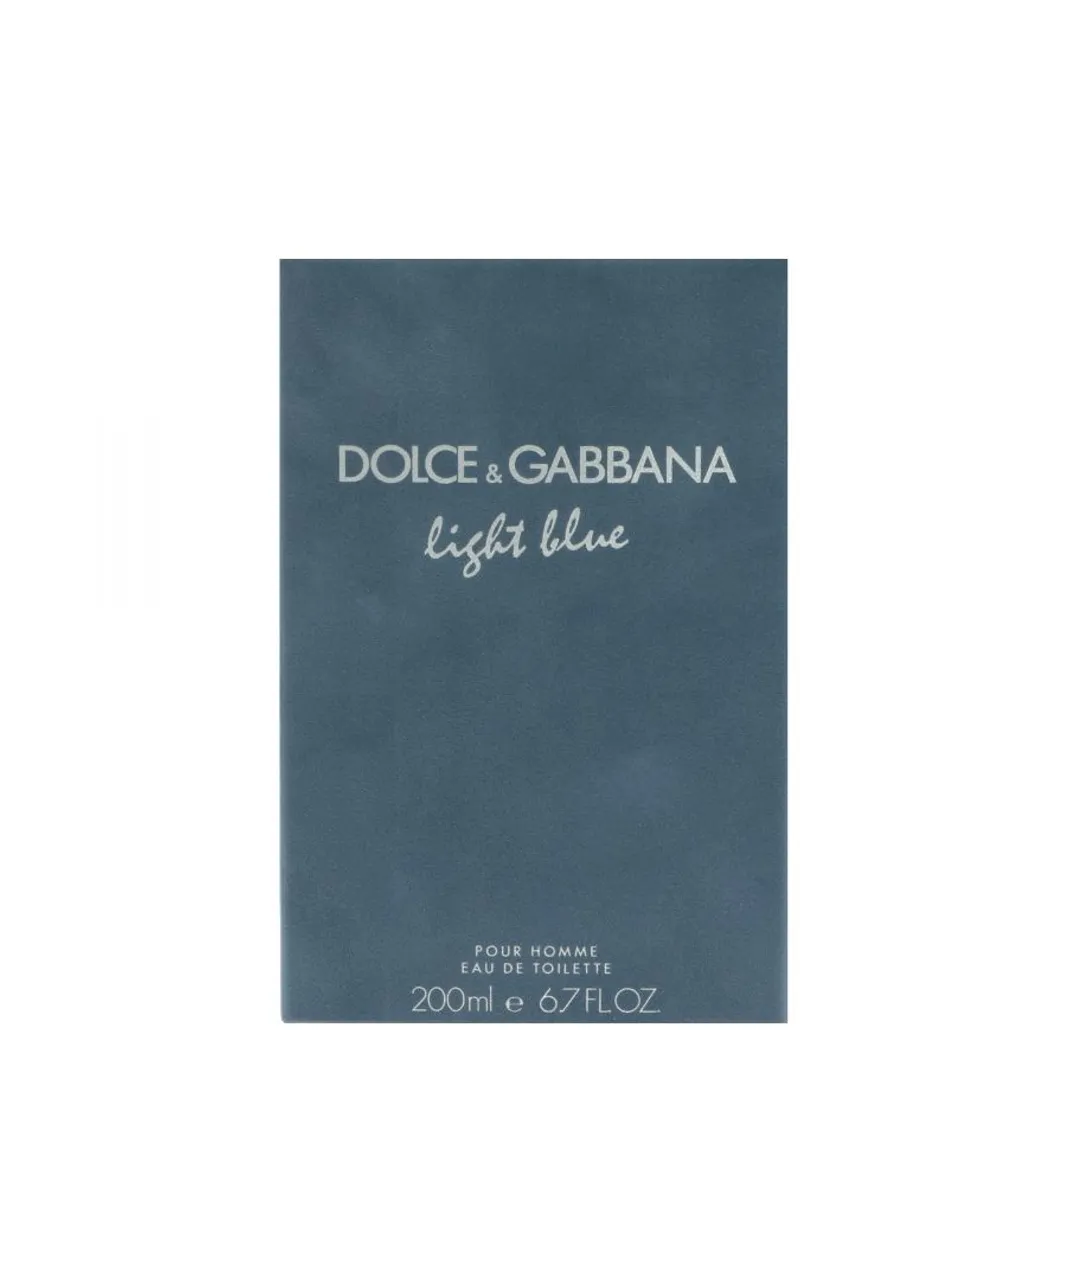 Dolce & Gabbana Mens Light Blue Pour Homme Eau de Toilette 200ml Spray - One Size